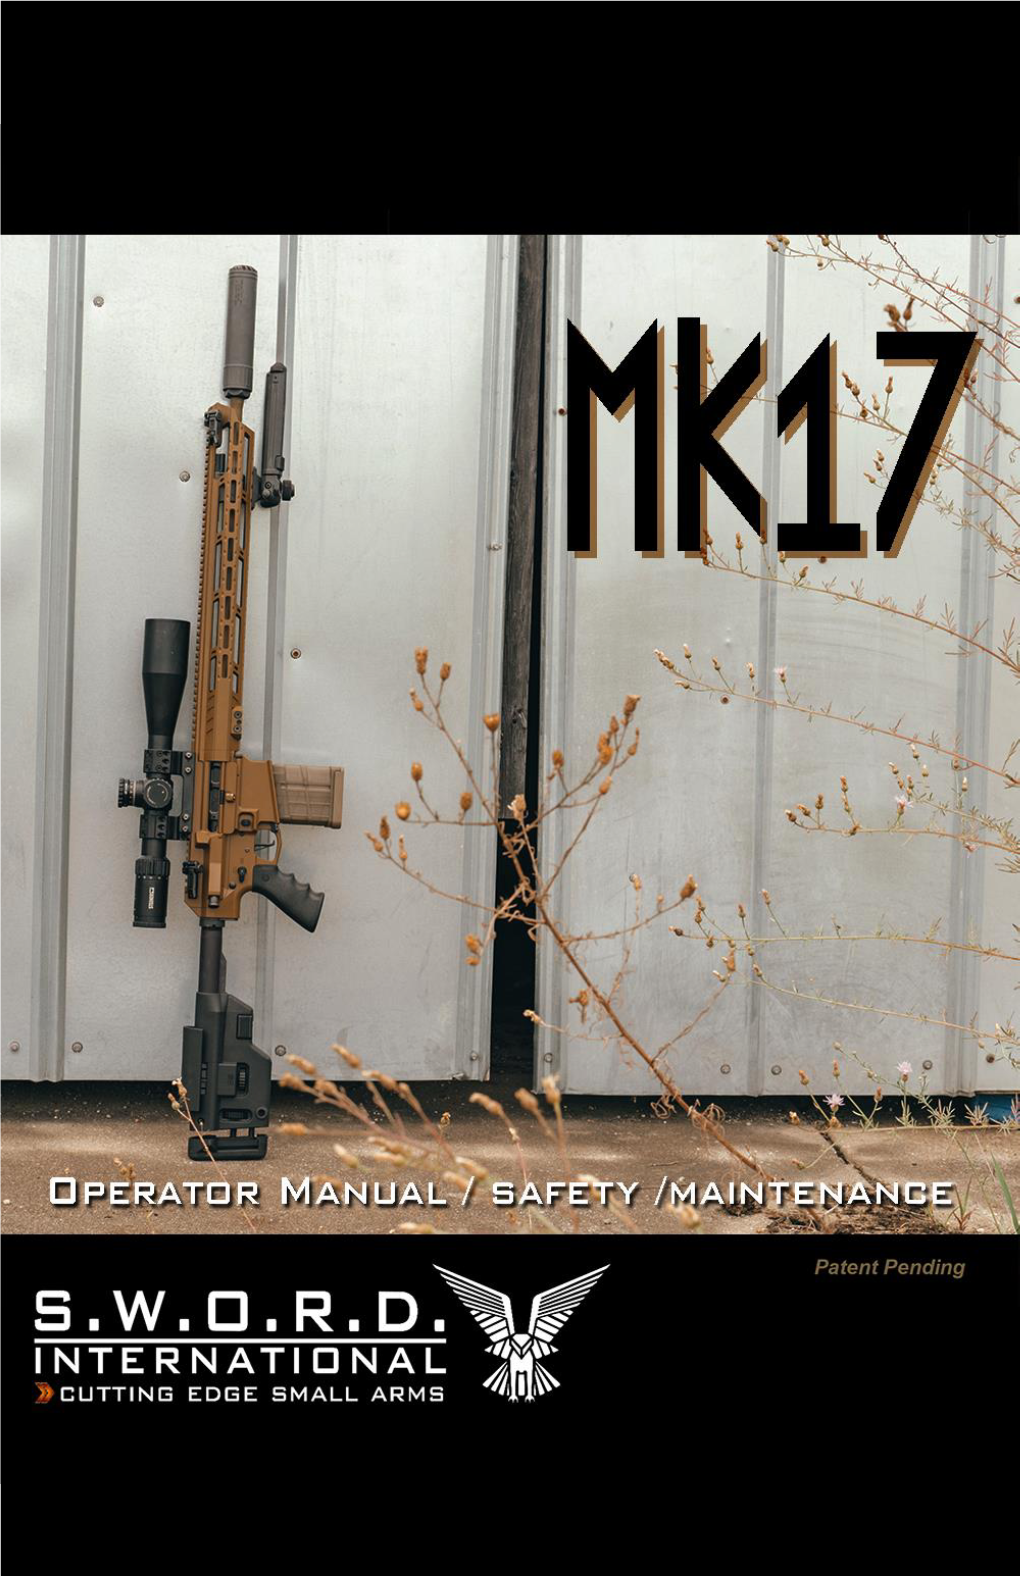 MK-17 Patent Pending Operators Manual